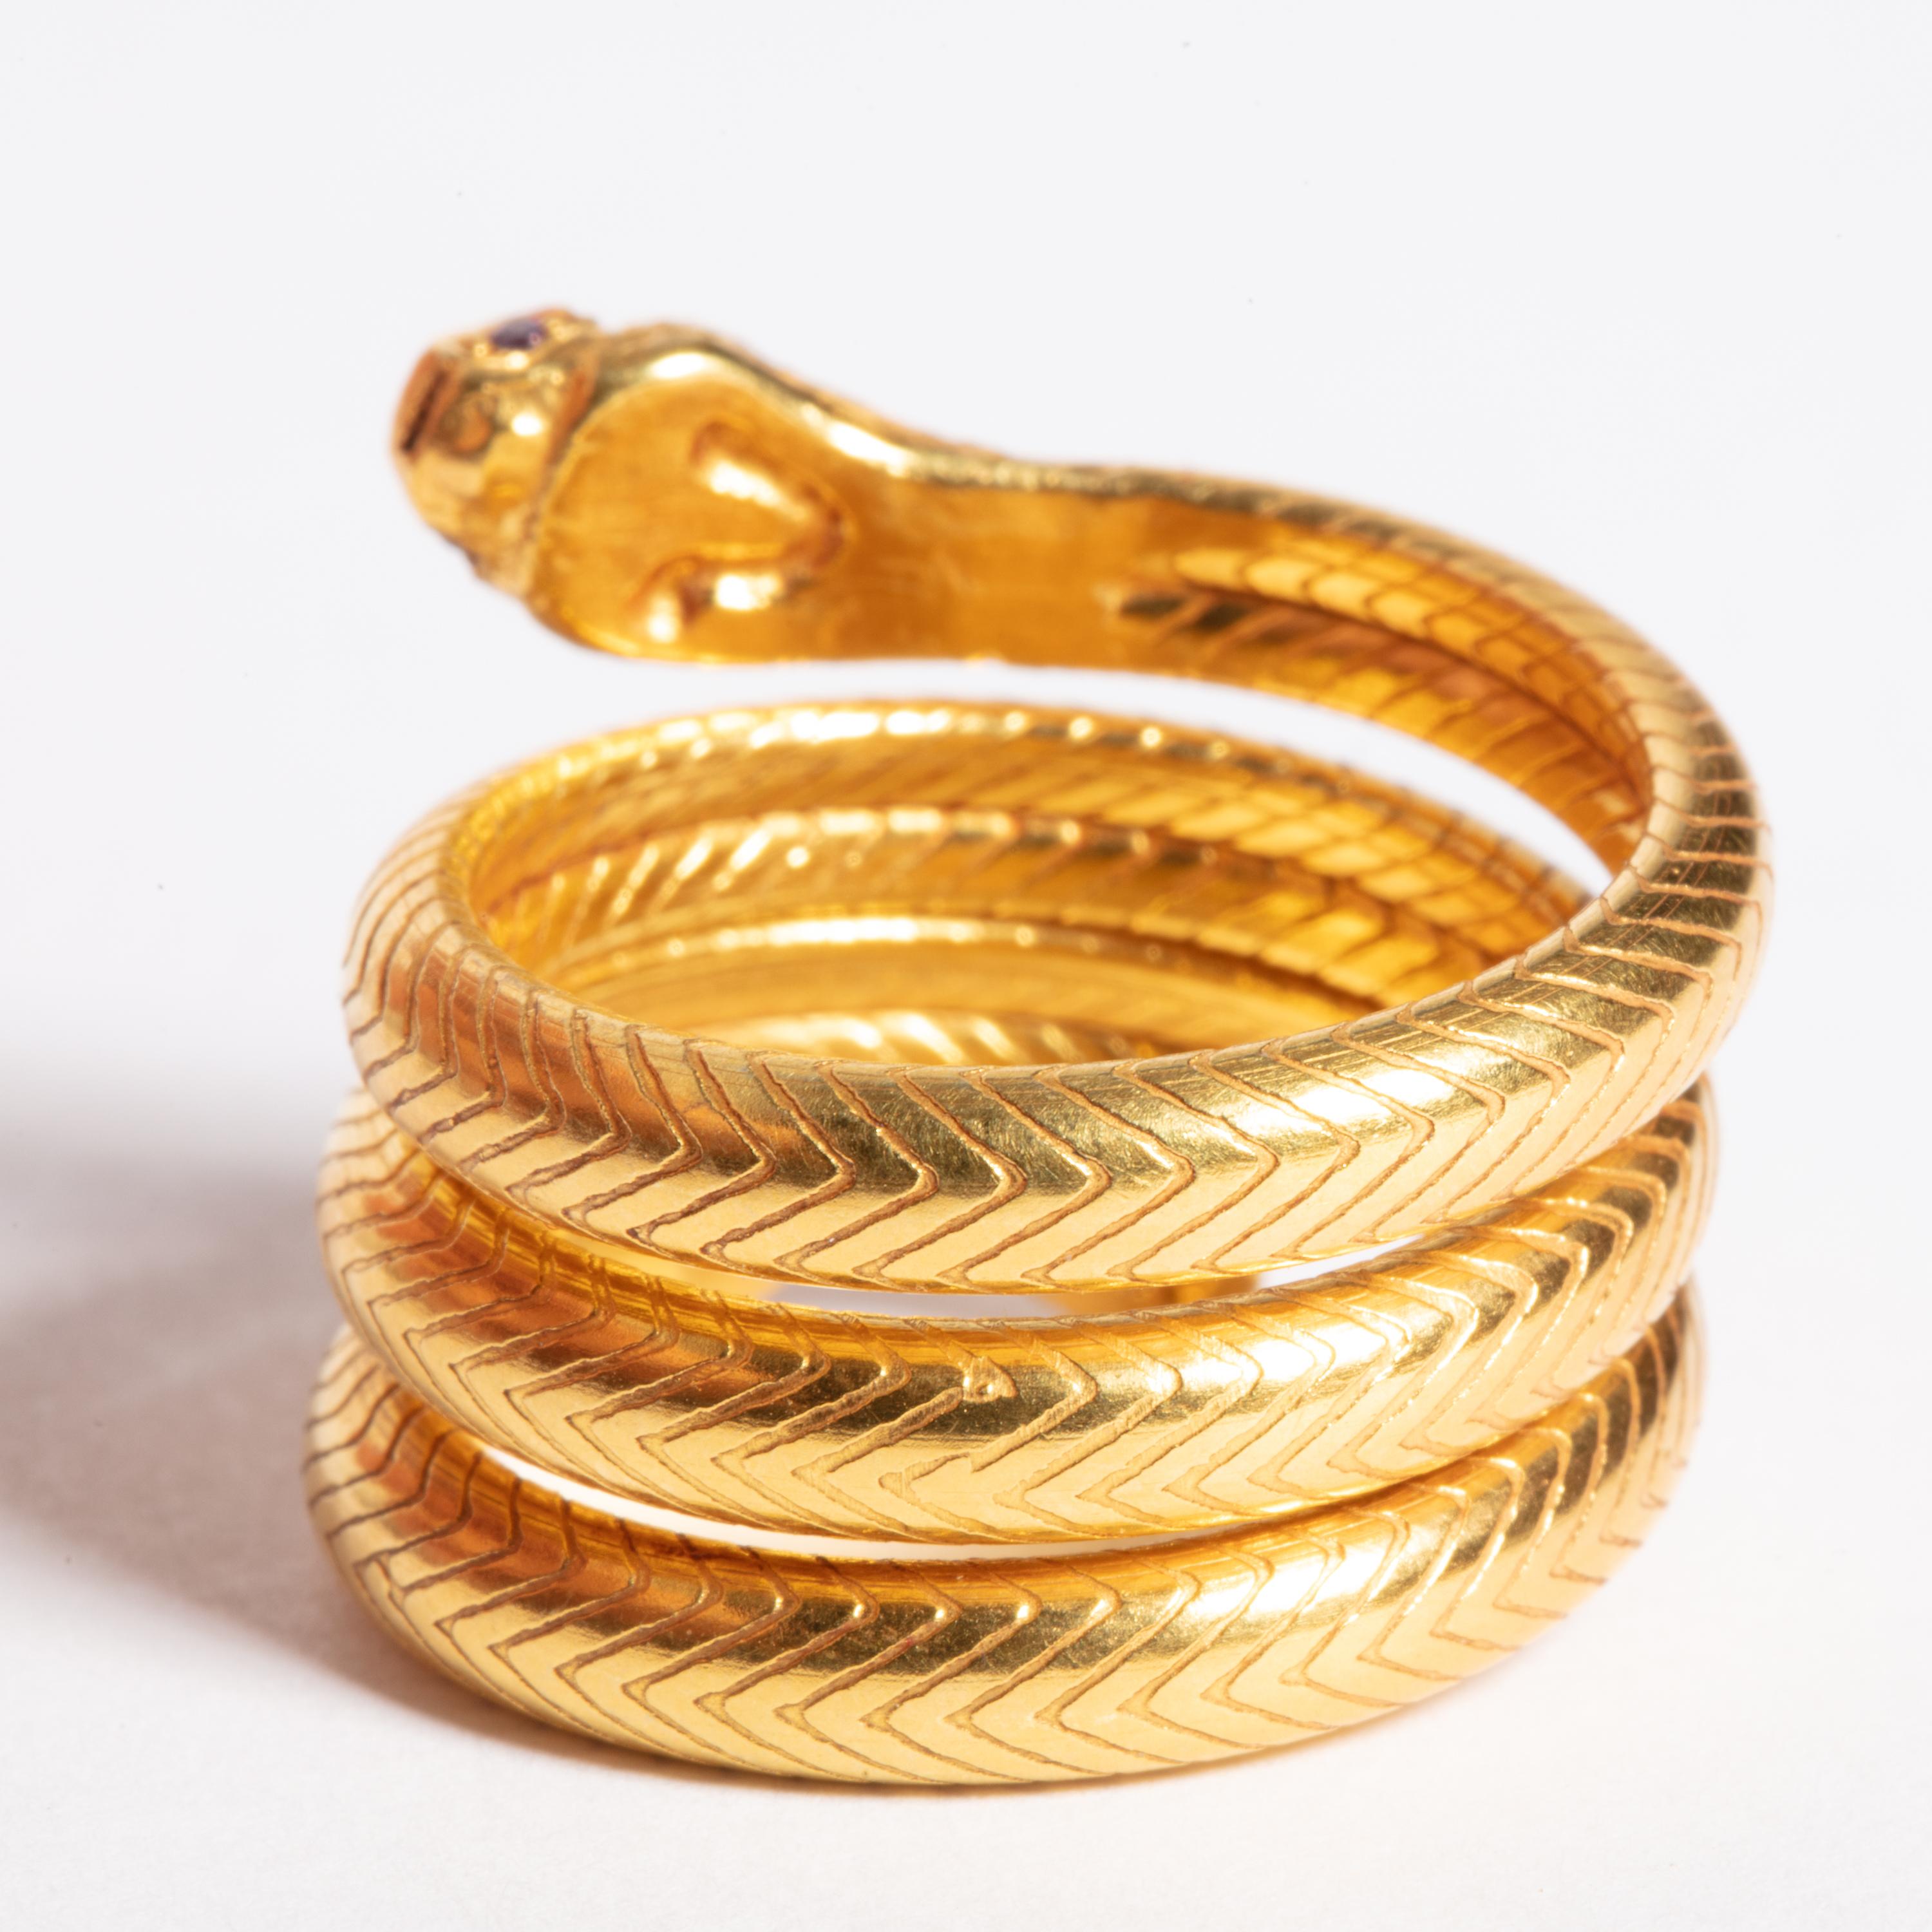 snake ring gold